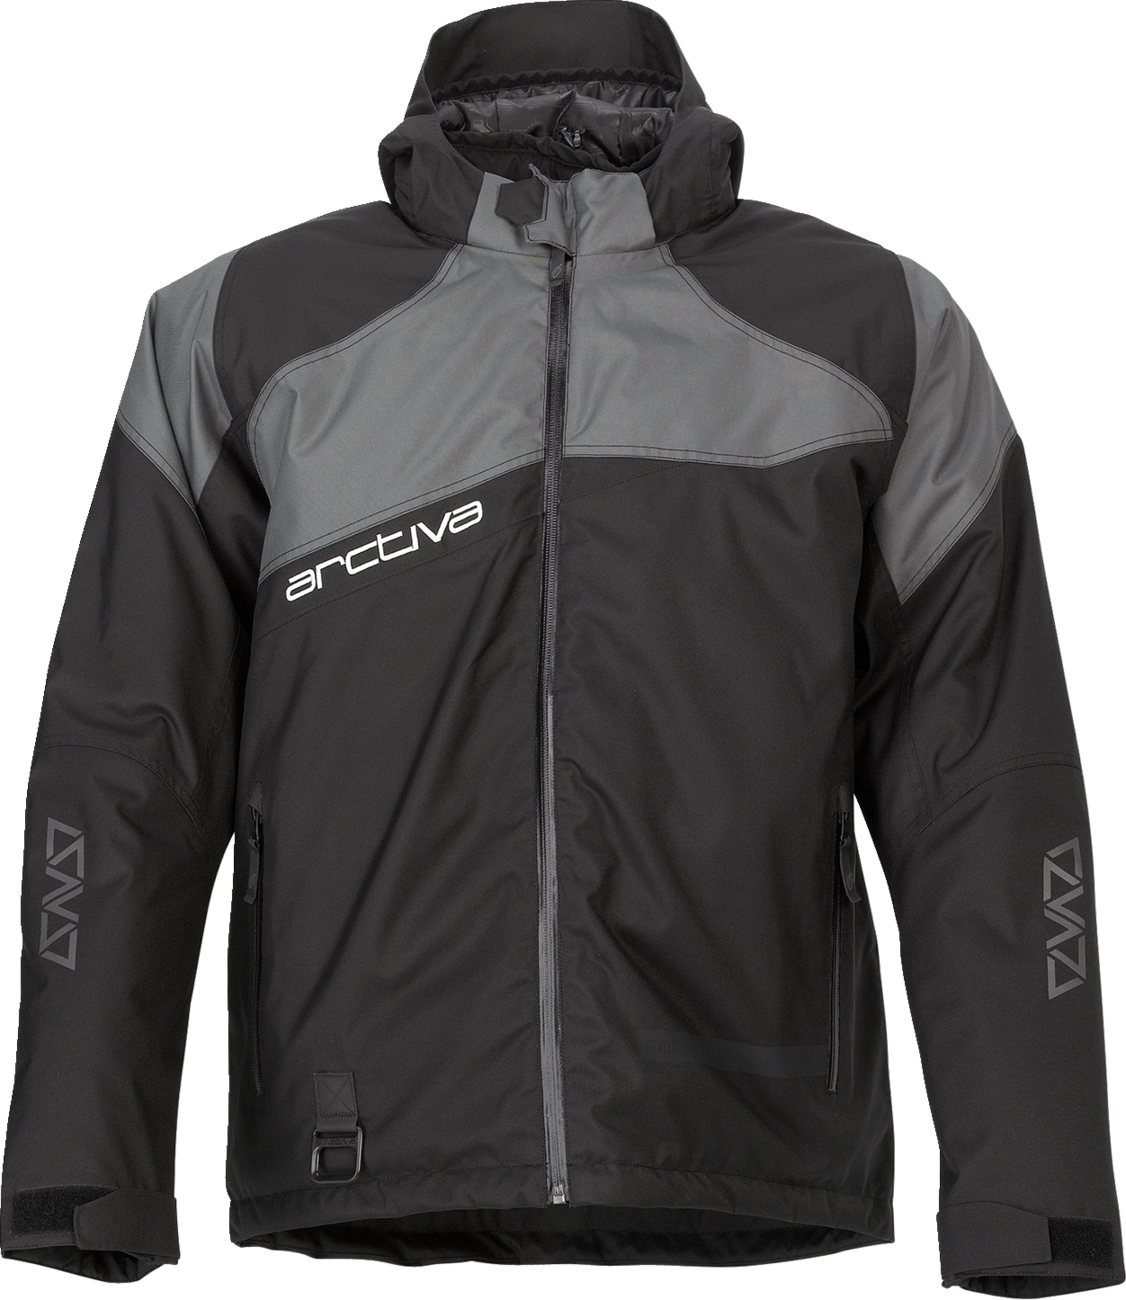 ARCTIVA Pivot 5 Hooded Jacket - Black/Gray - Small 3120-2054